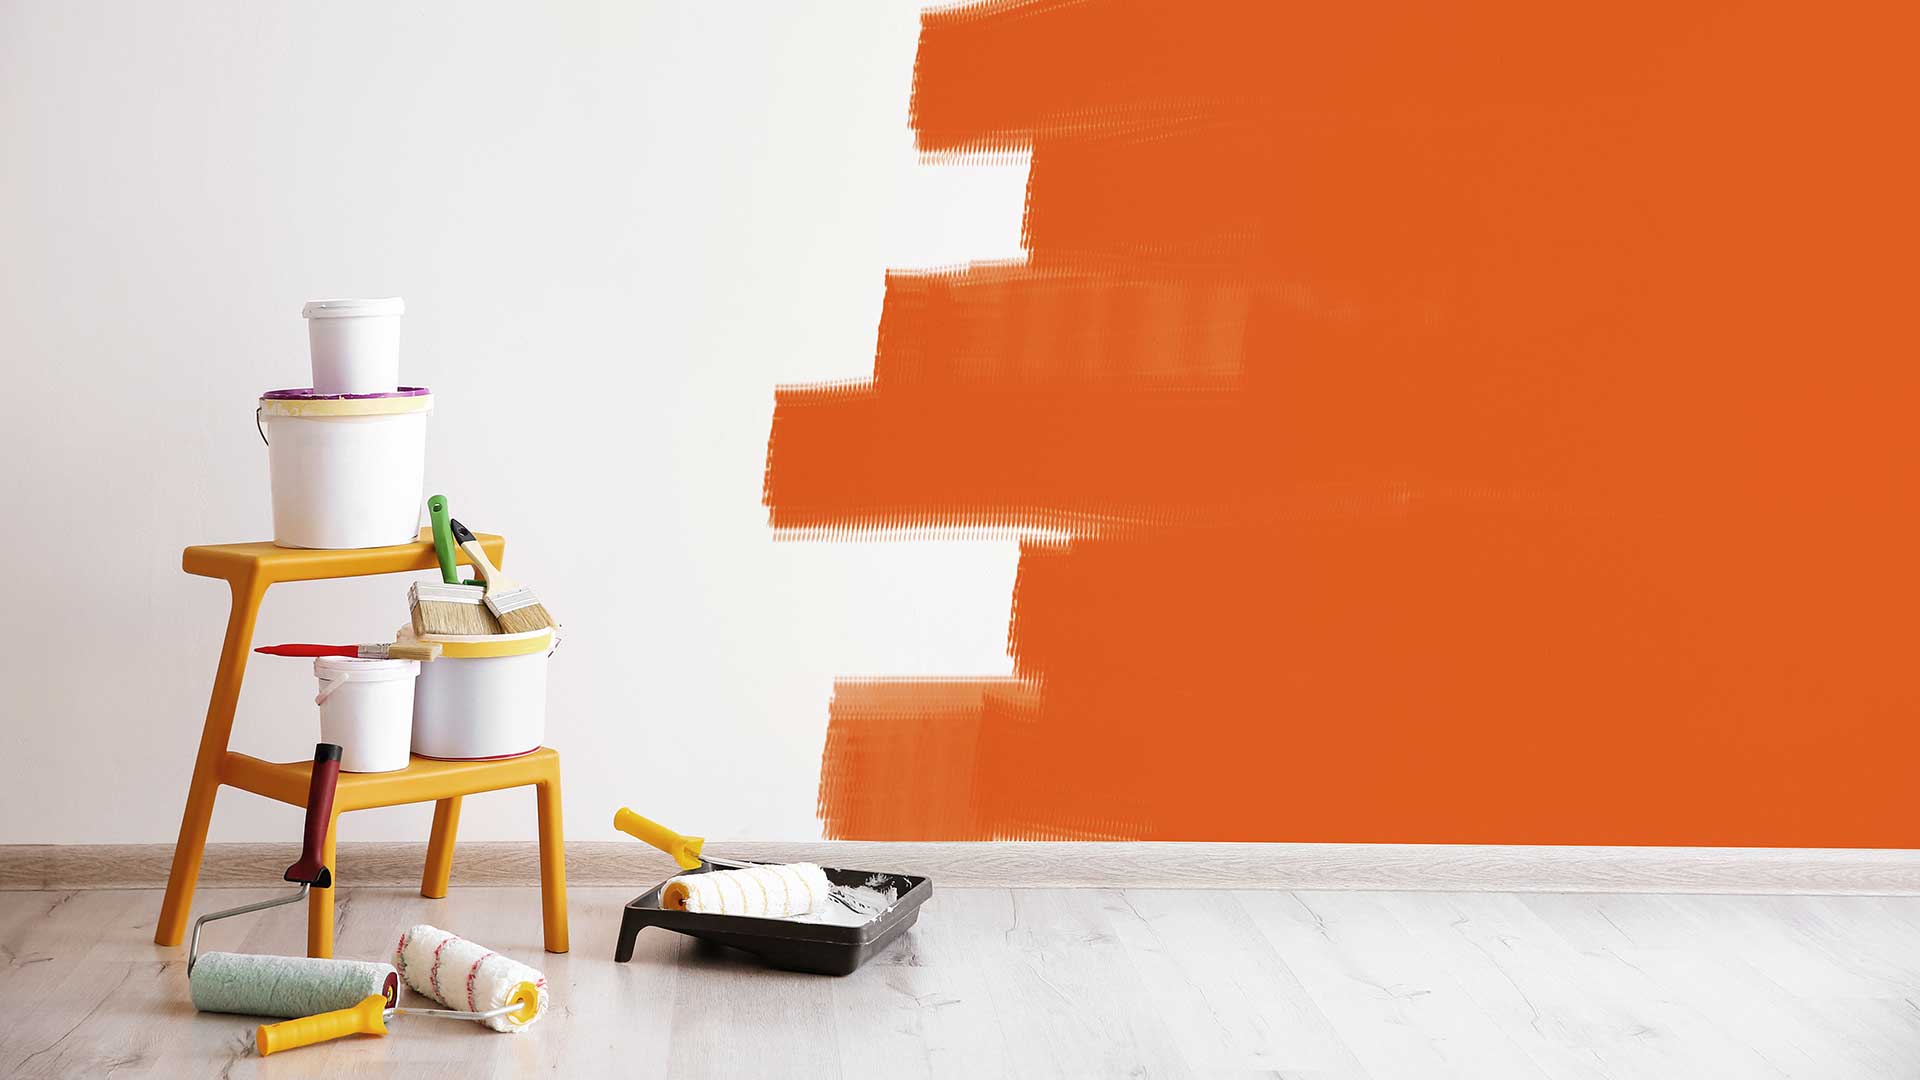 narzędzia i farby do malowania położone na drewnianych schodkach na tle malowanej ściany -  w 2022